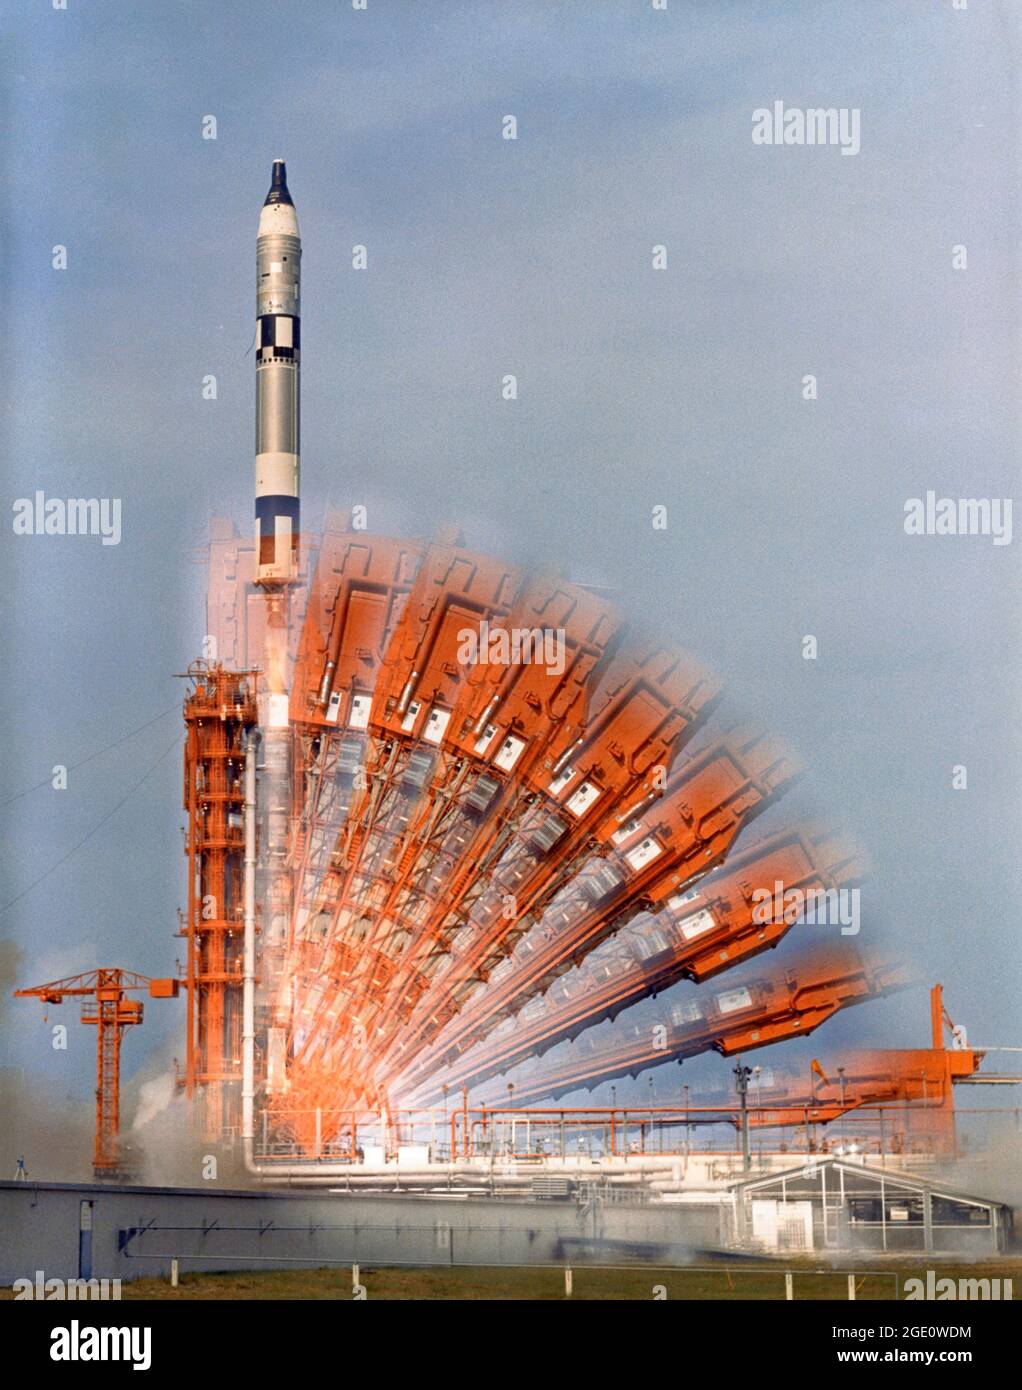 Gemini 10 Time Lapse Description UNE photographie en temps d'exposition montre la configuration de Pad 19 jusqu'au lancement de Gemini 10. John W. Young et Michael Collins sont à bord du vaisseau spatial. Les deux astronautes passeraient près de trois jours à s'amarrer avec le véhicule cible d'Agena et à effectuer un certain nombre d'expériences. Banque D'Images